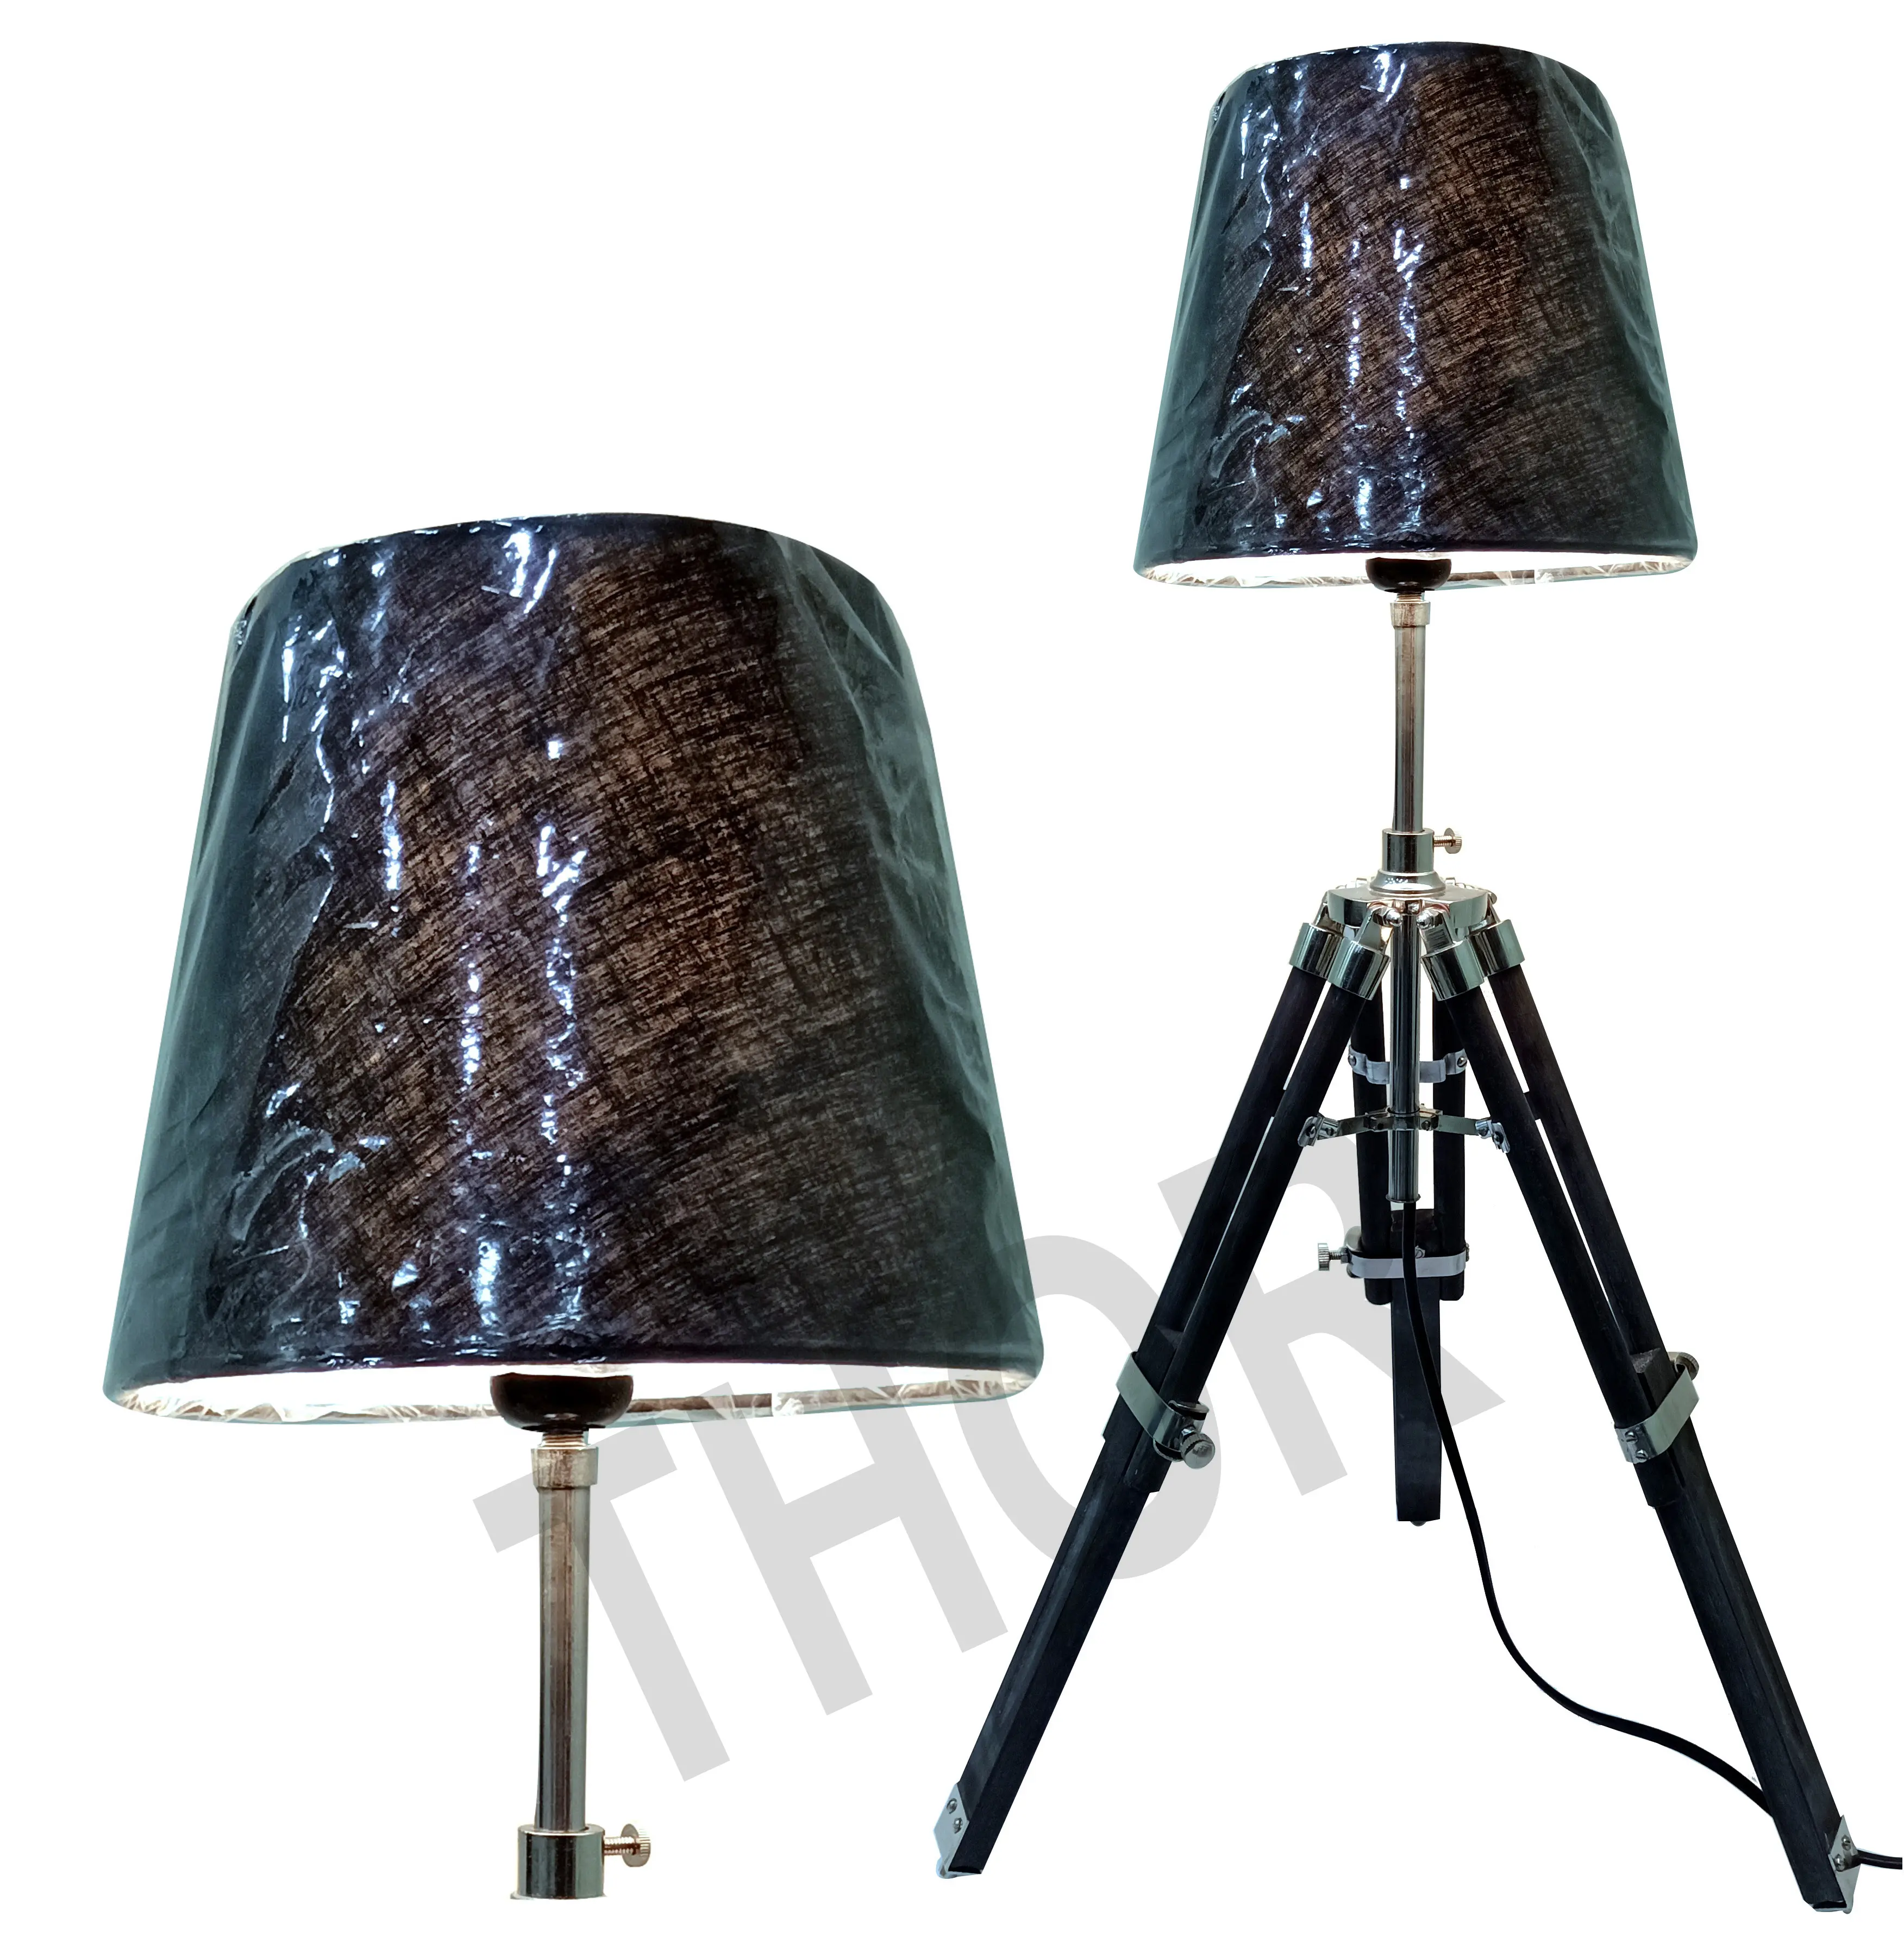 Lampe de Table à led avec trépied en bois, finition chromée, lampe de chevet, support en bois